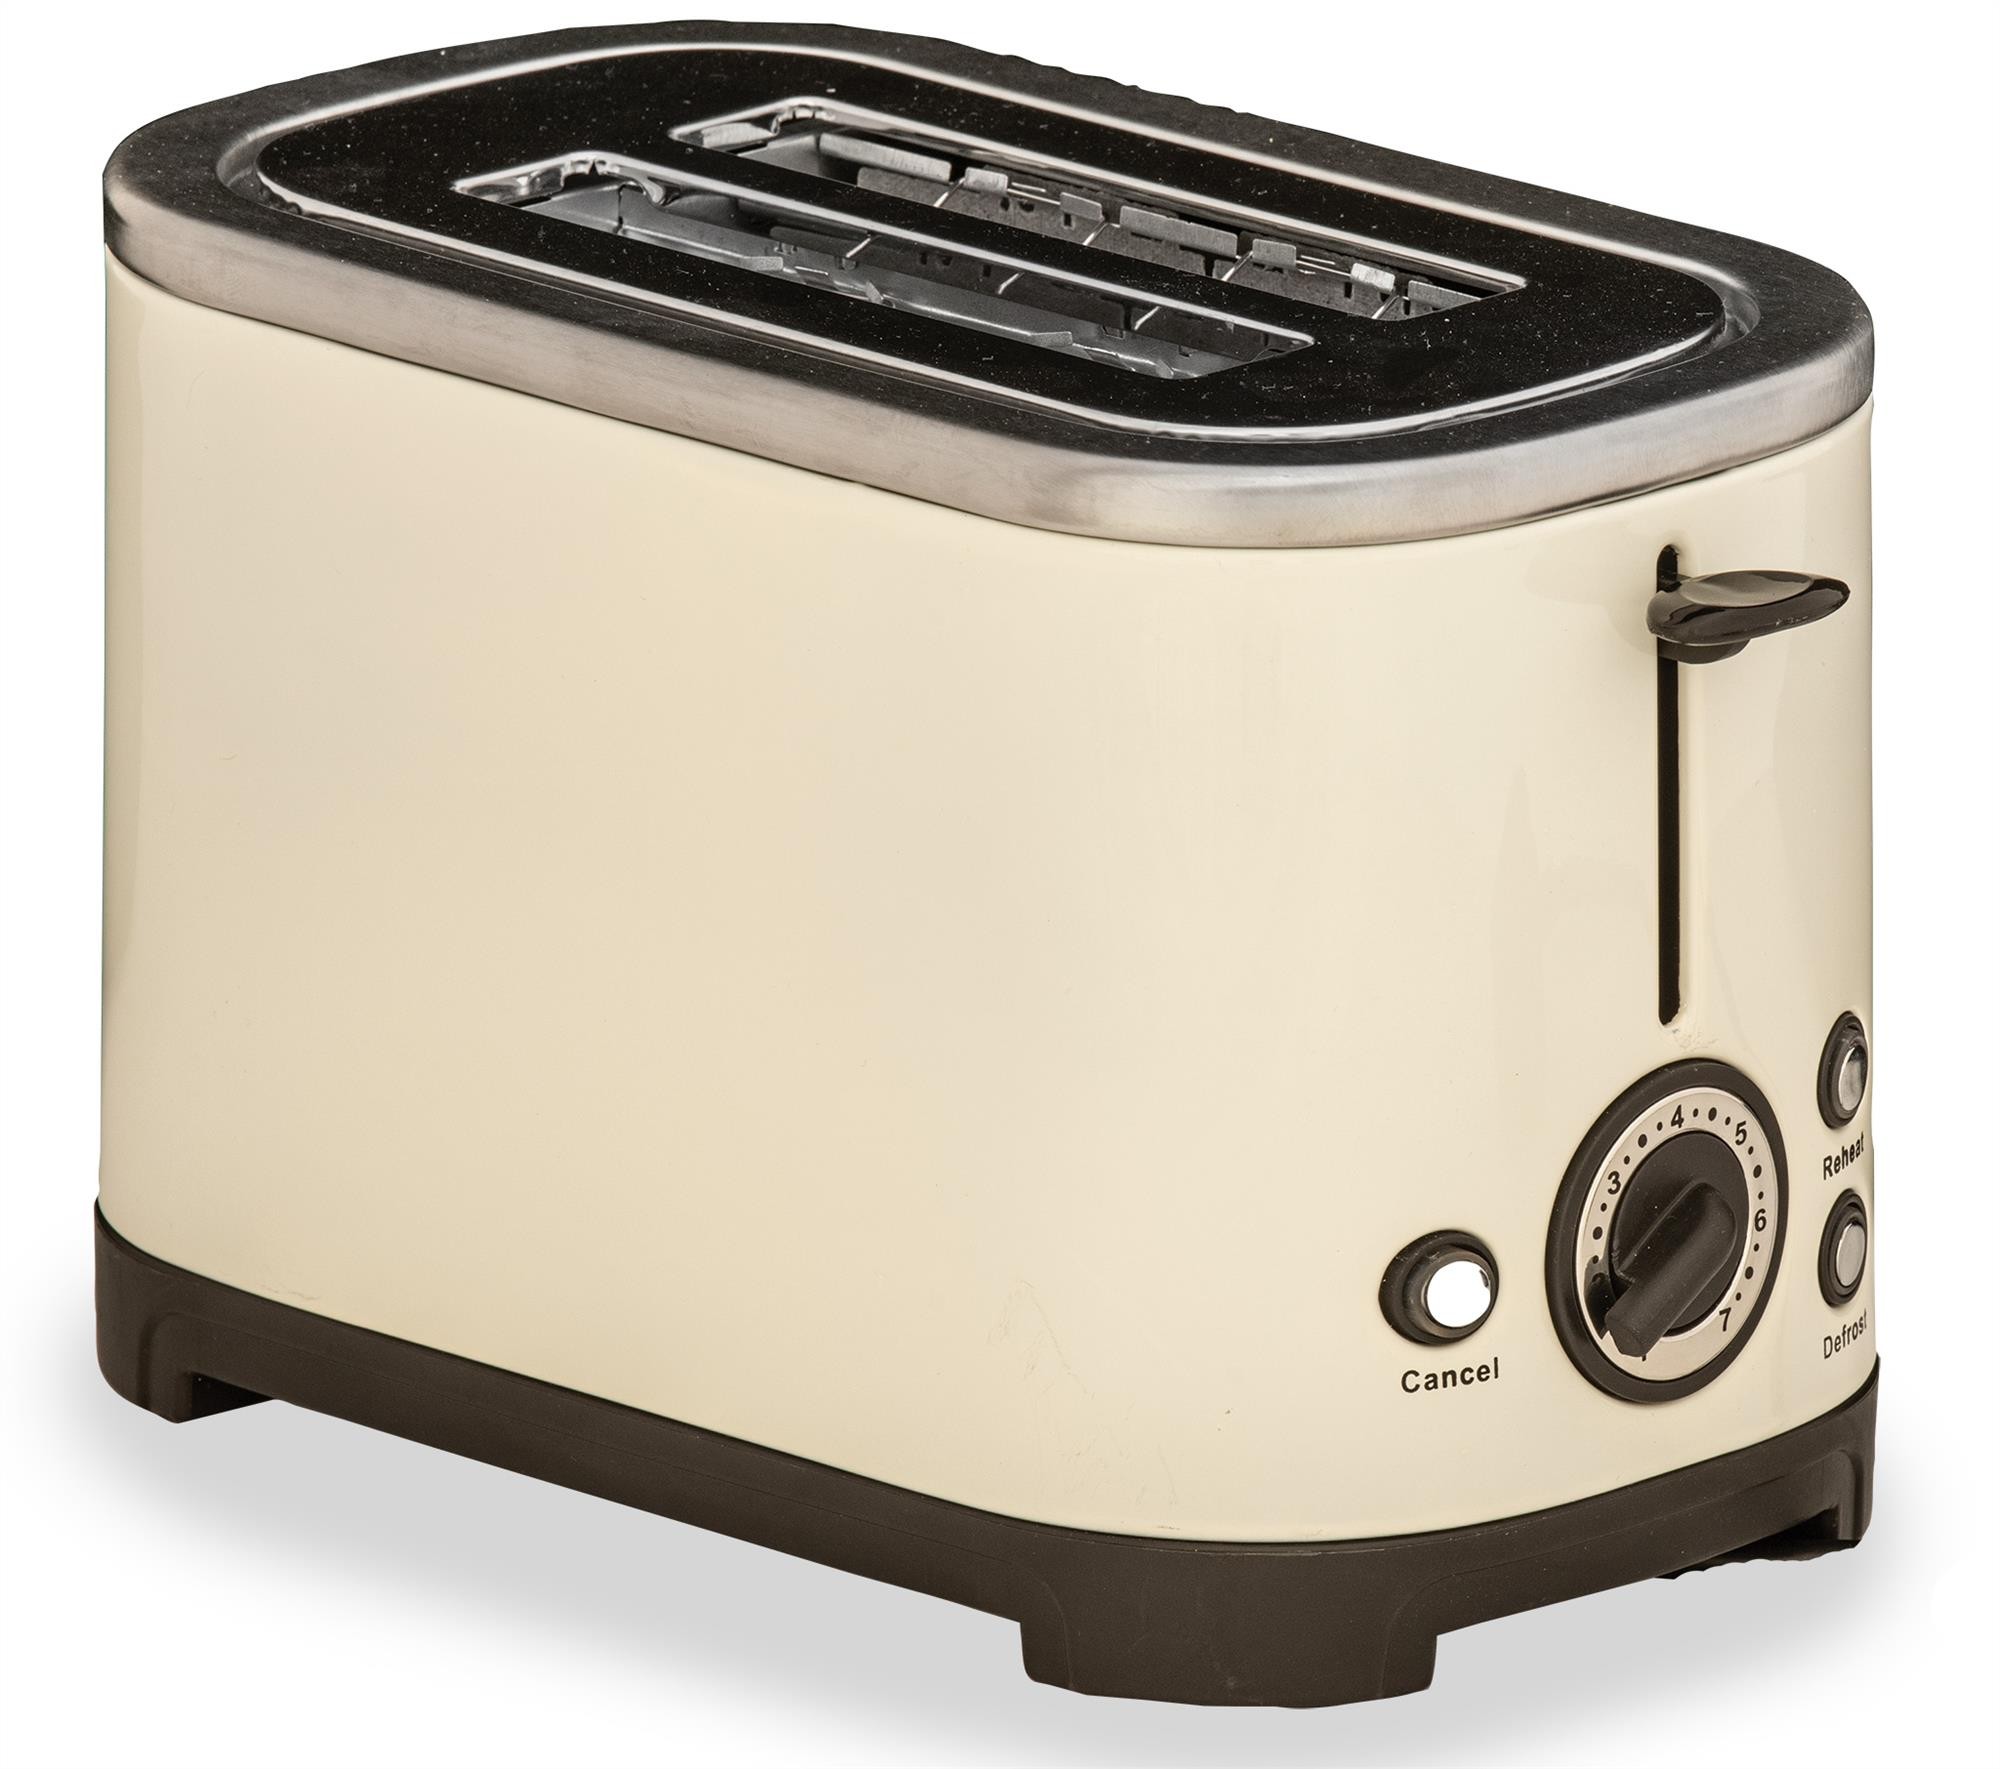 https://www.caravanstuff4u.co.uk/30796/2-slice-toaster-quest-rocket-cream.jpg